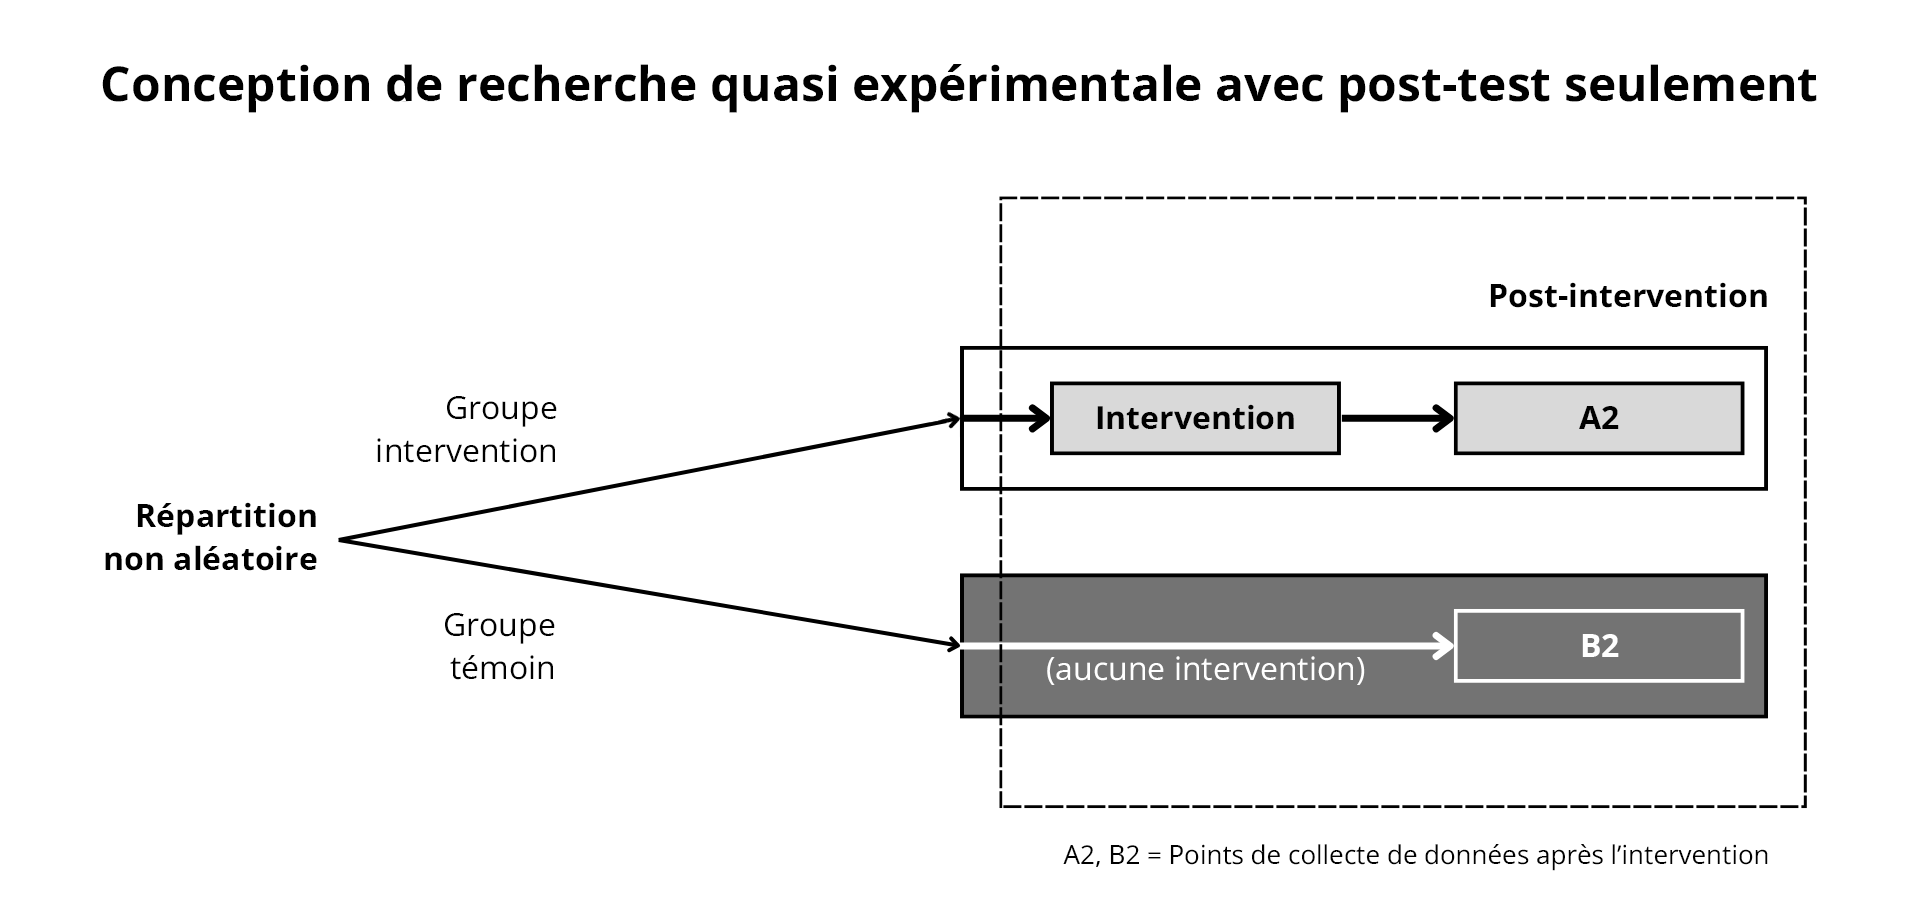 Figure 6. Conception quasi expérimentale avec post-test seulement. Adaptation de https://www.k4health.org/toolkits/measuring-success/types-evaluation-designs